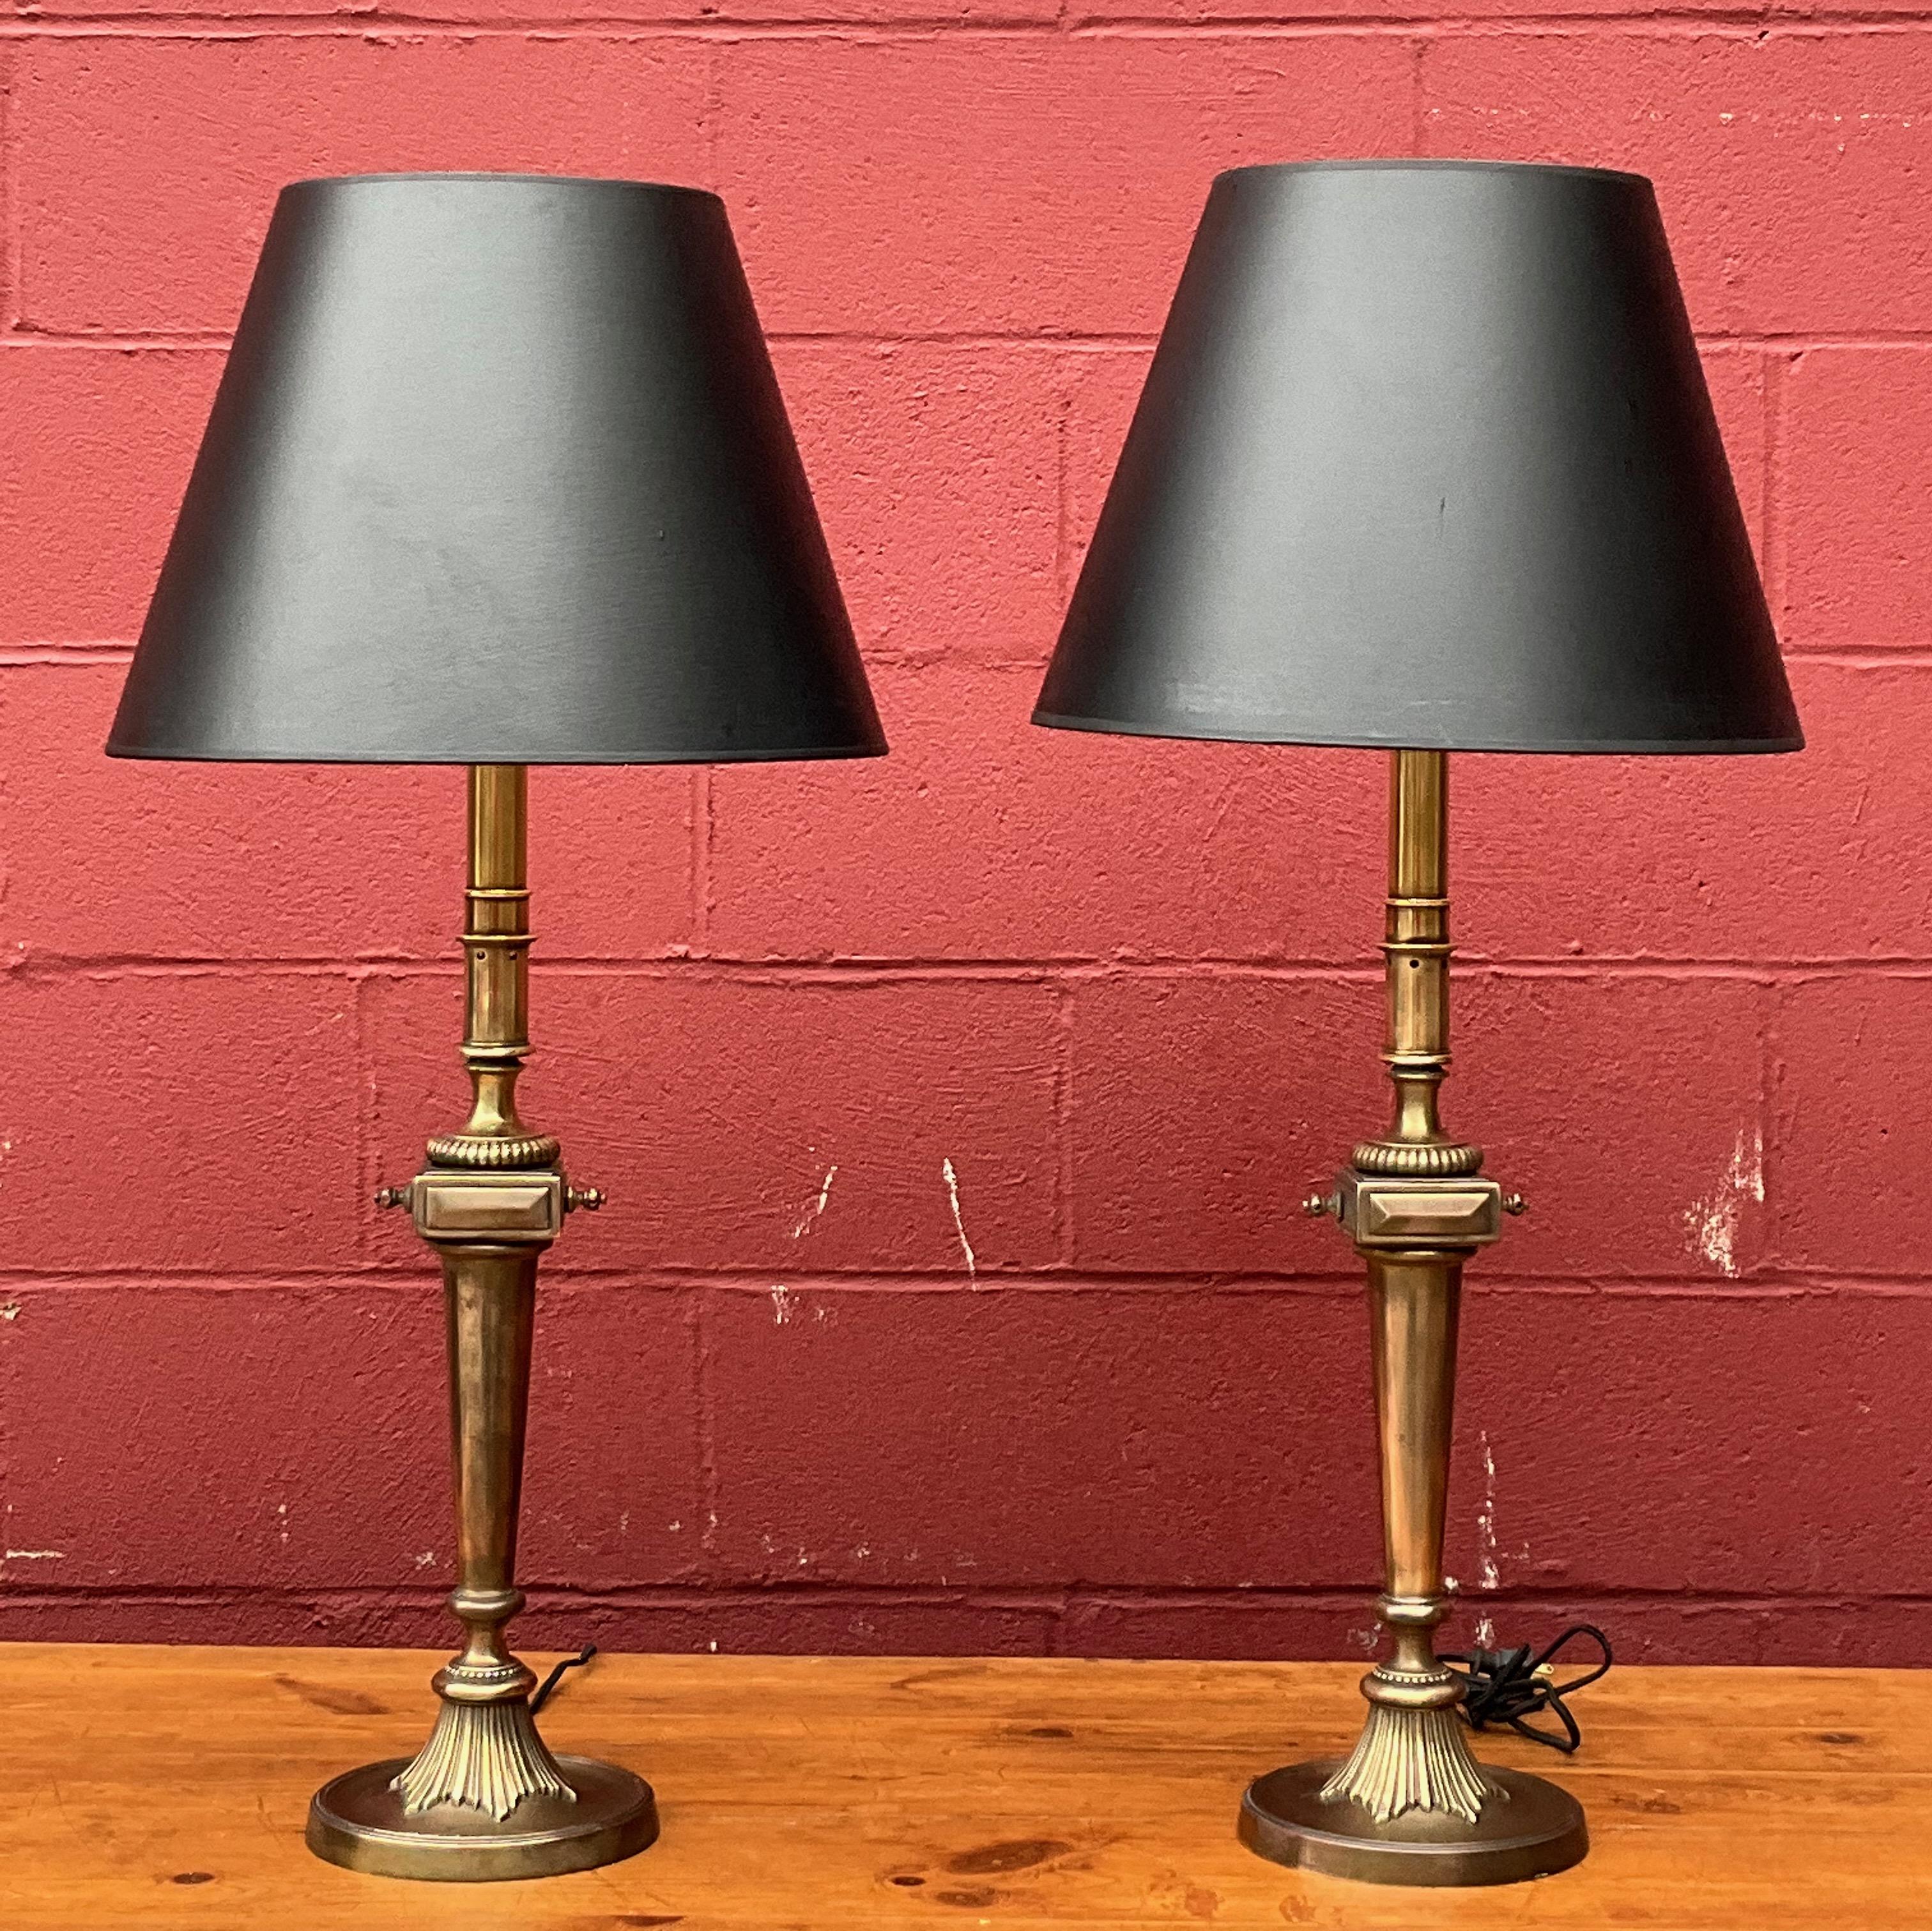 Wir präsentieren ein gut verarbeitetes Paar amerikanischer neoklassischer Messing-Tischlampen aus den 1950er Jahren mit englischem Messing-Finish, die vor kurzem für optimale Funktionalität neu verkabelt wurden. Diese Lampen weisen eine charmante